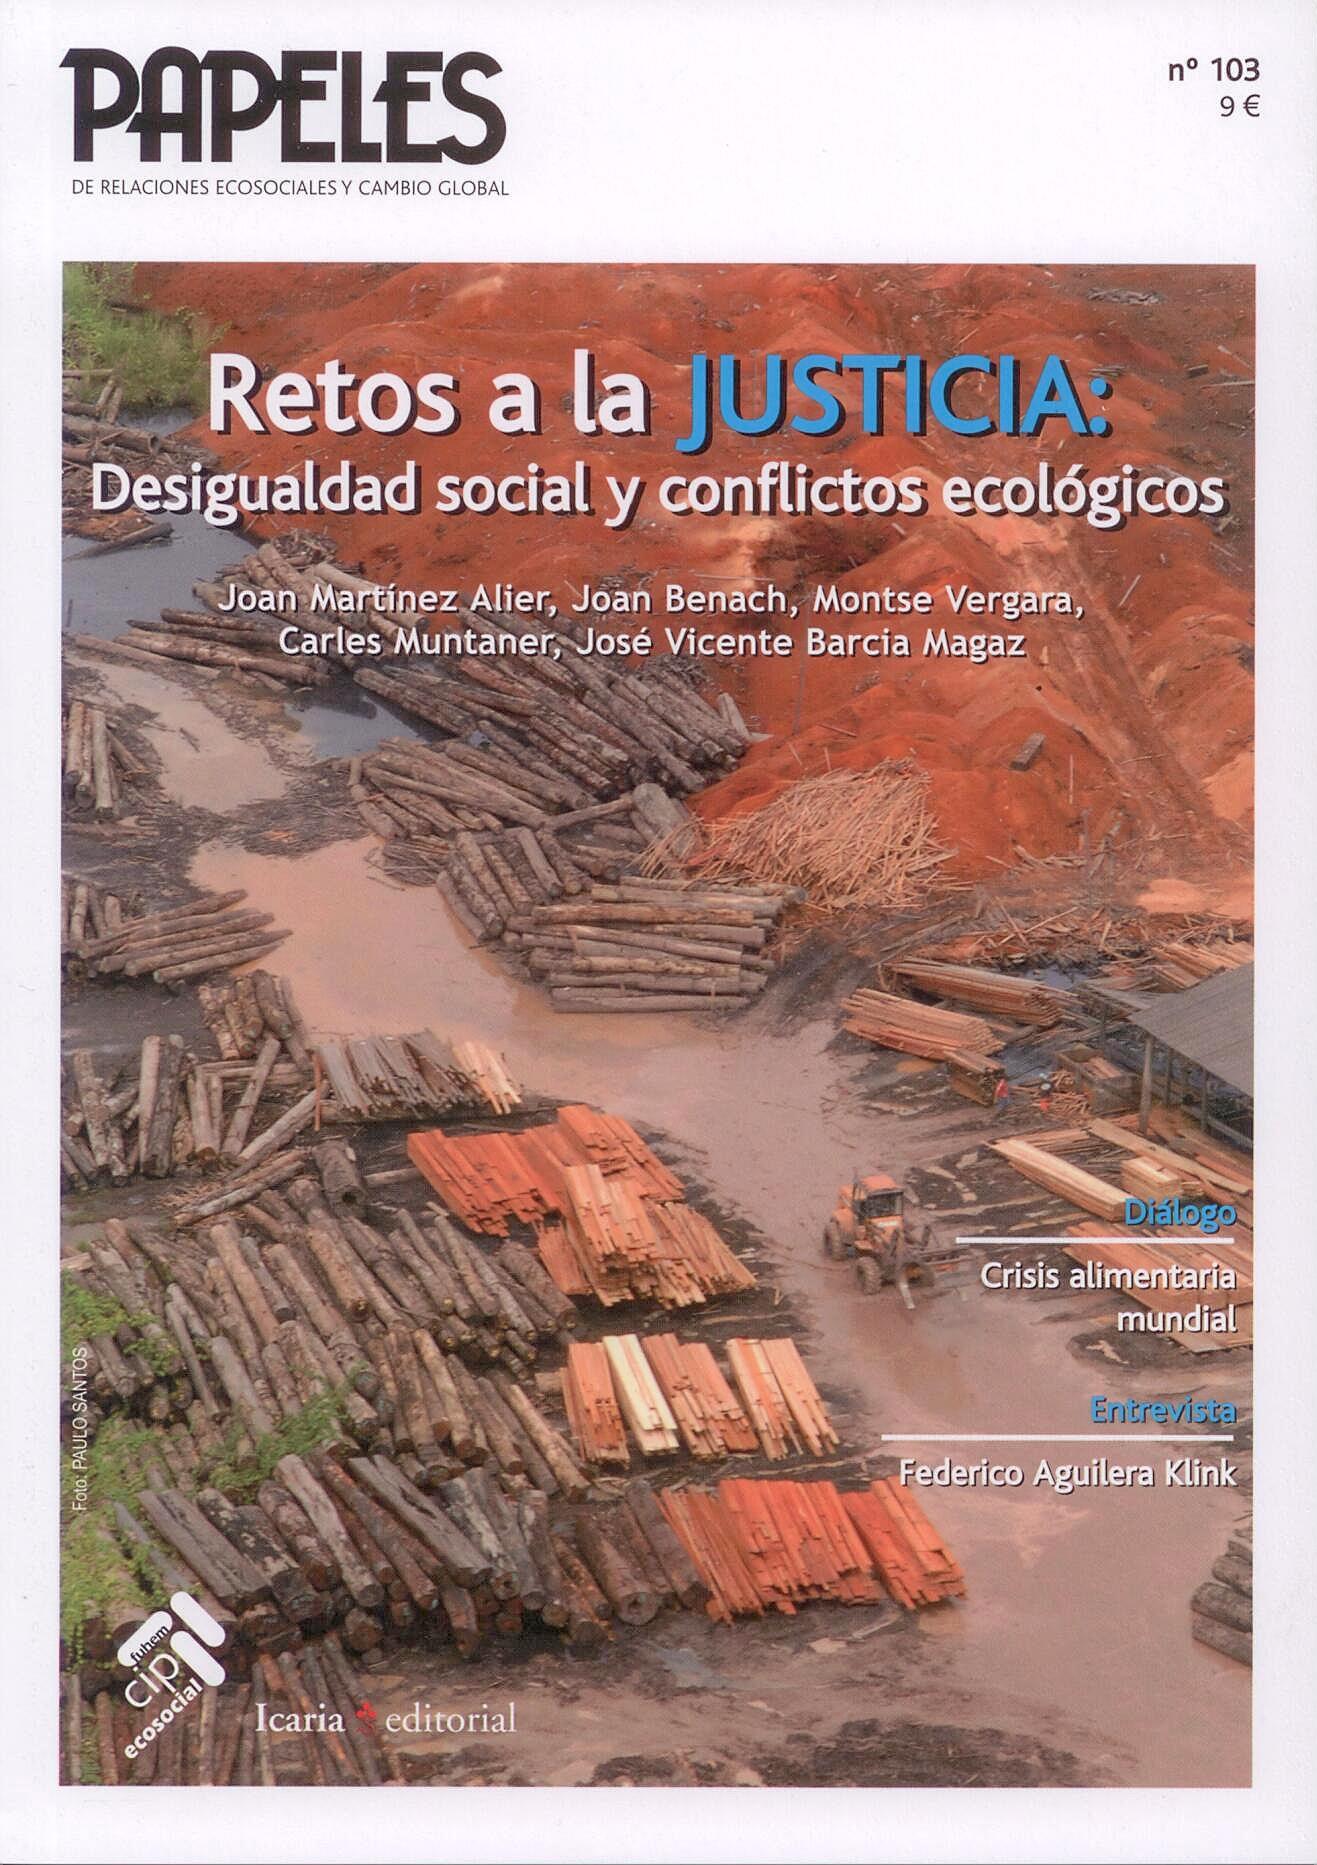 Retos a la Justicia "Desigualdad Social y Conflictos Ecologicos"